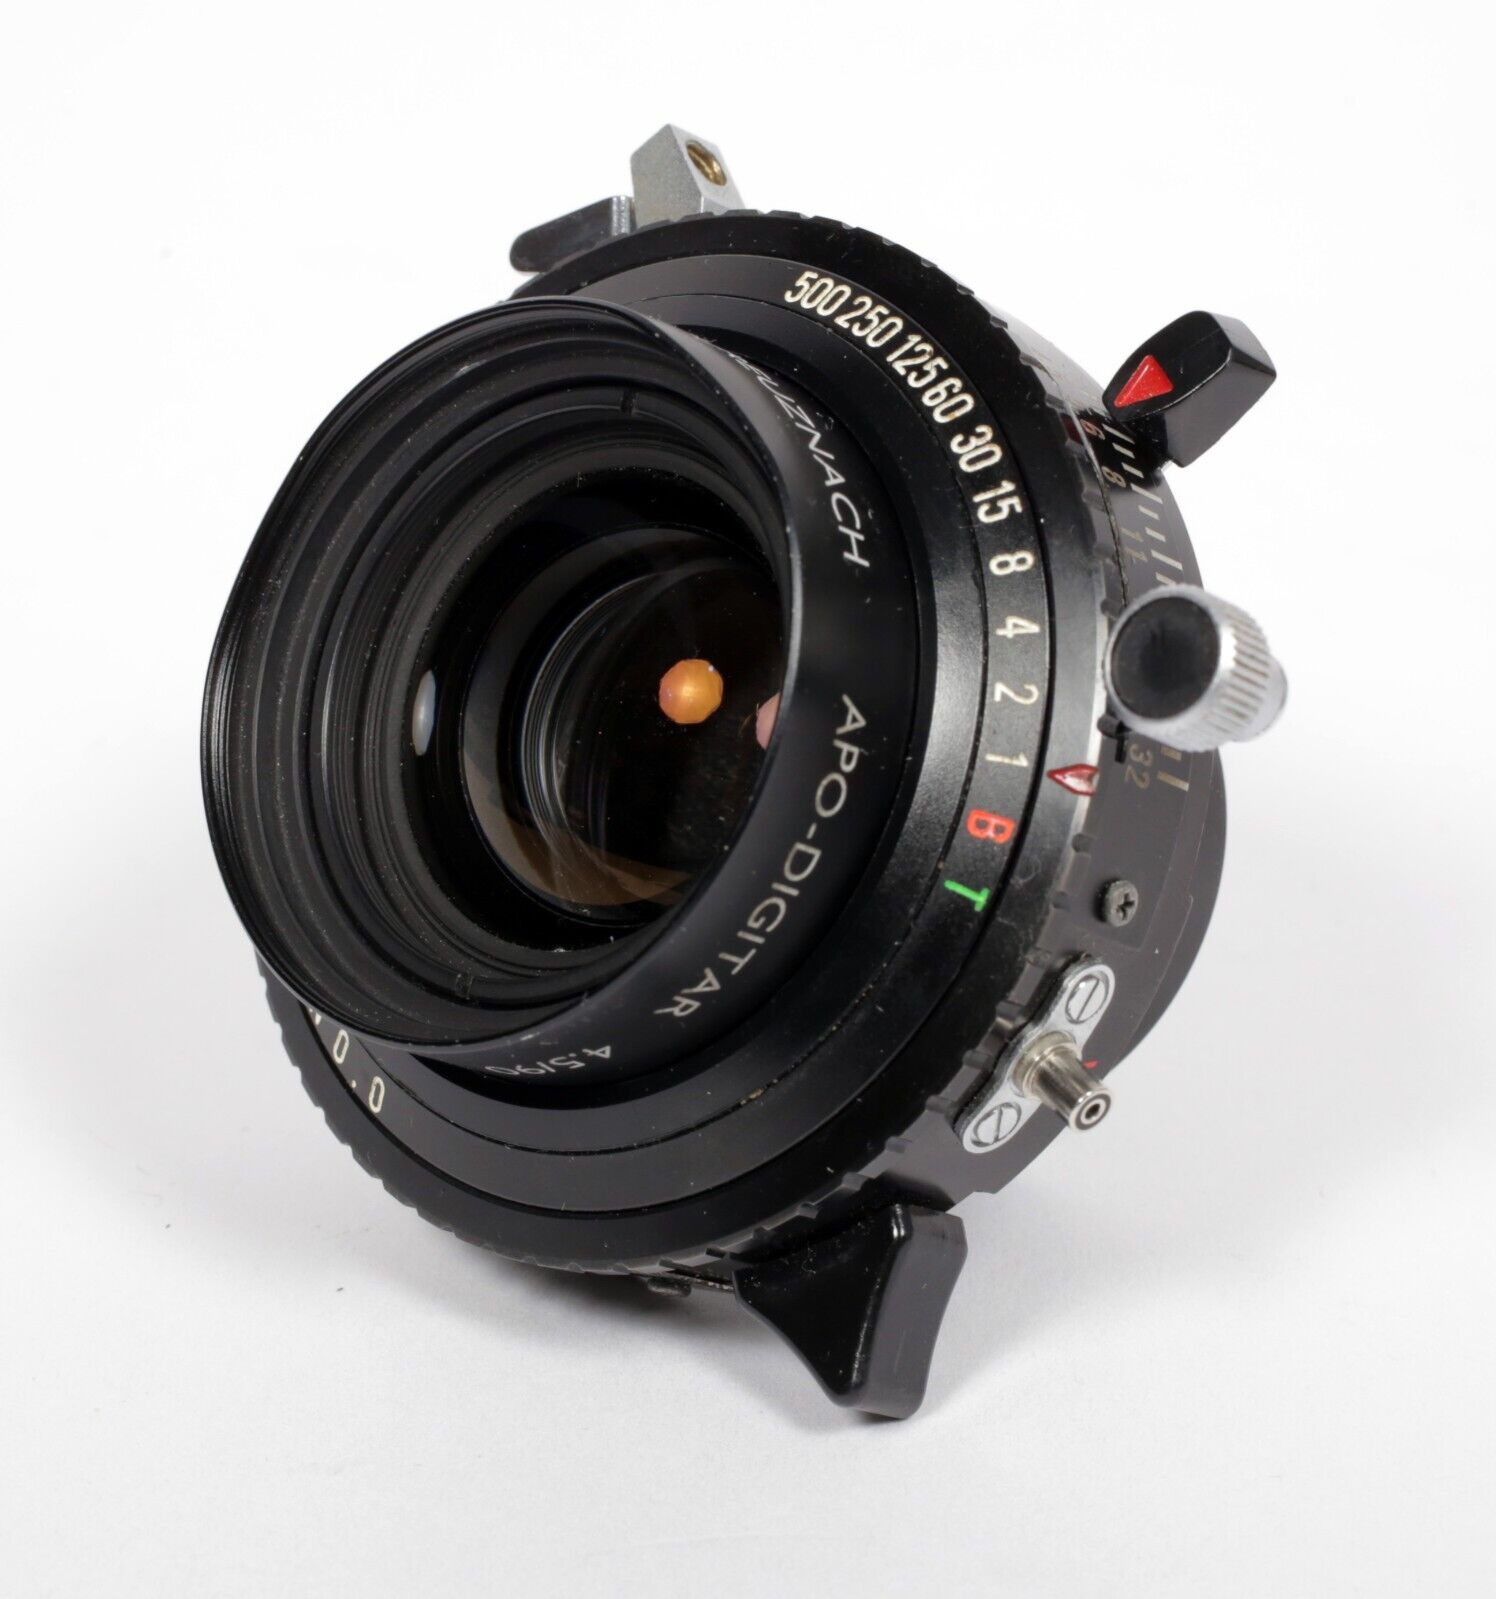 Schneider Apo Digitar 90mm F4.5 N-53° MC Macro lens in Copal #0 